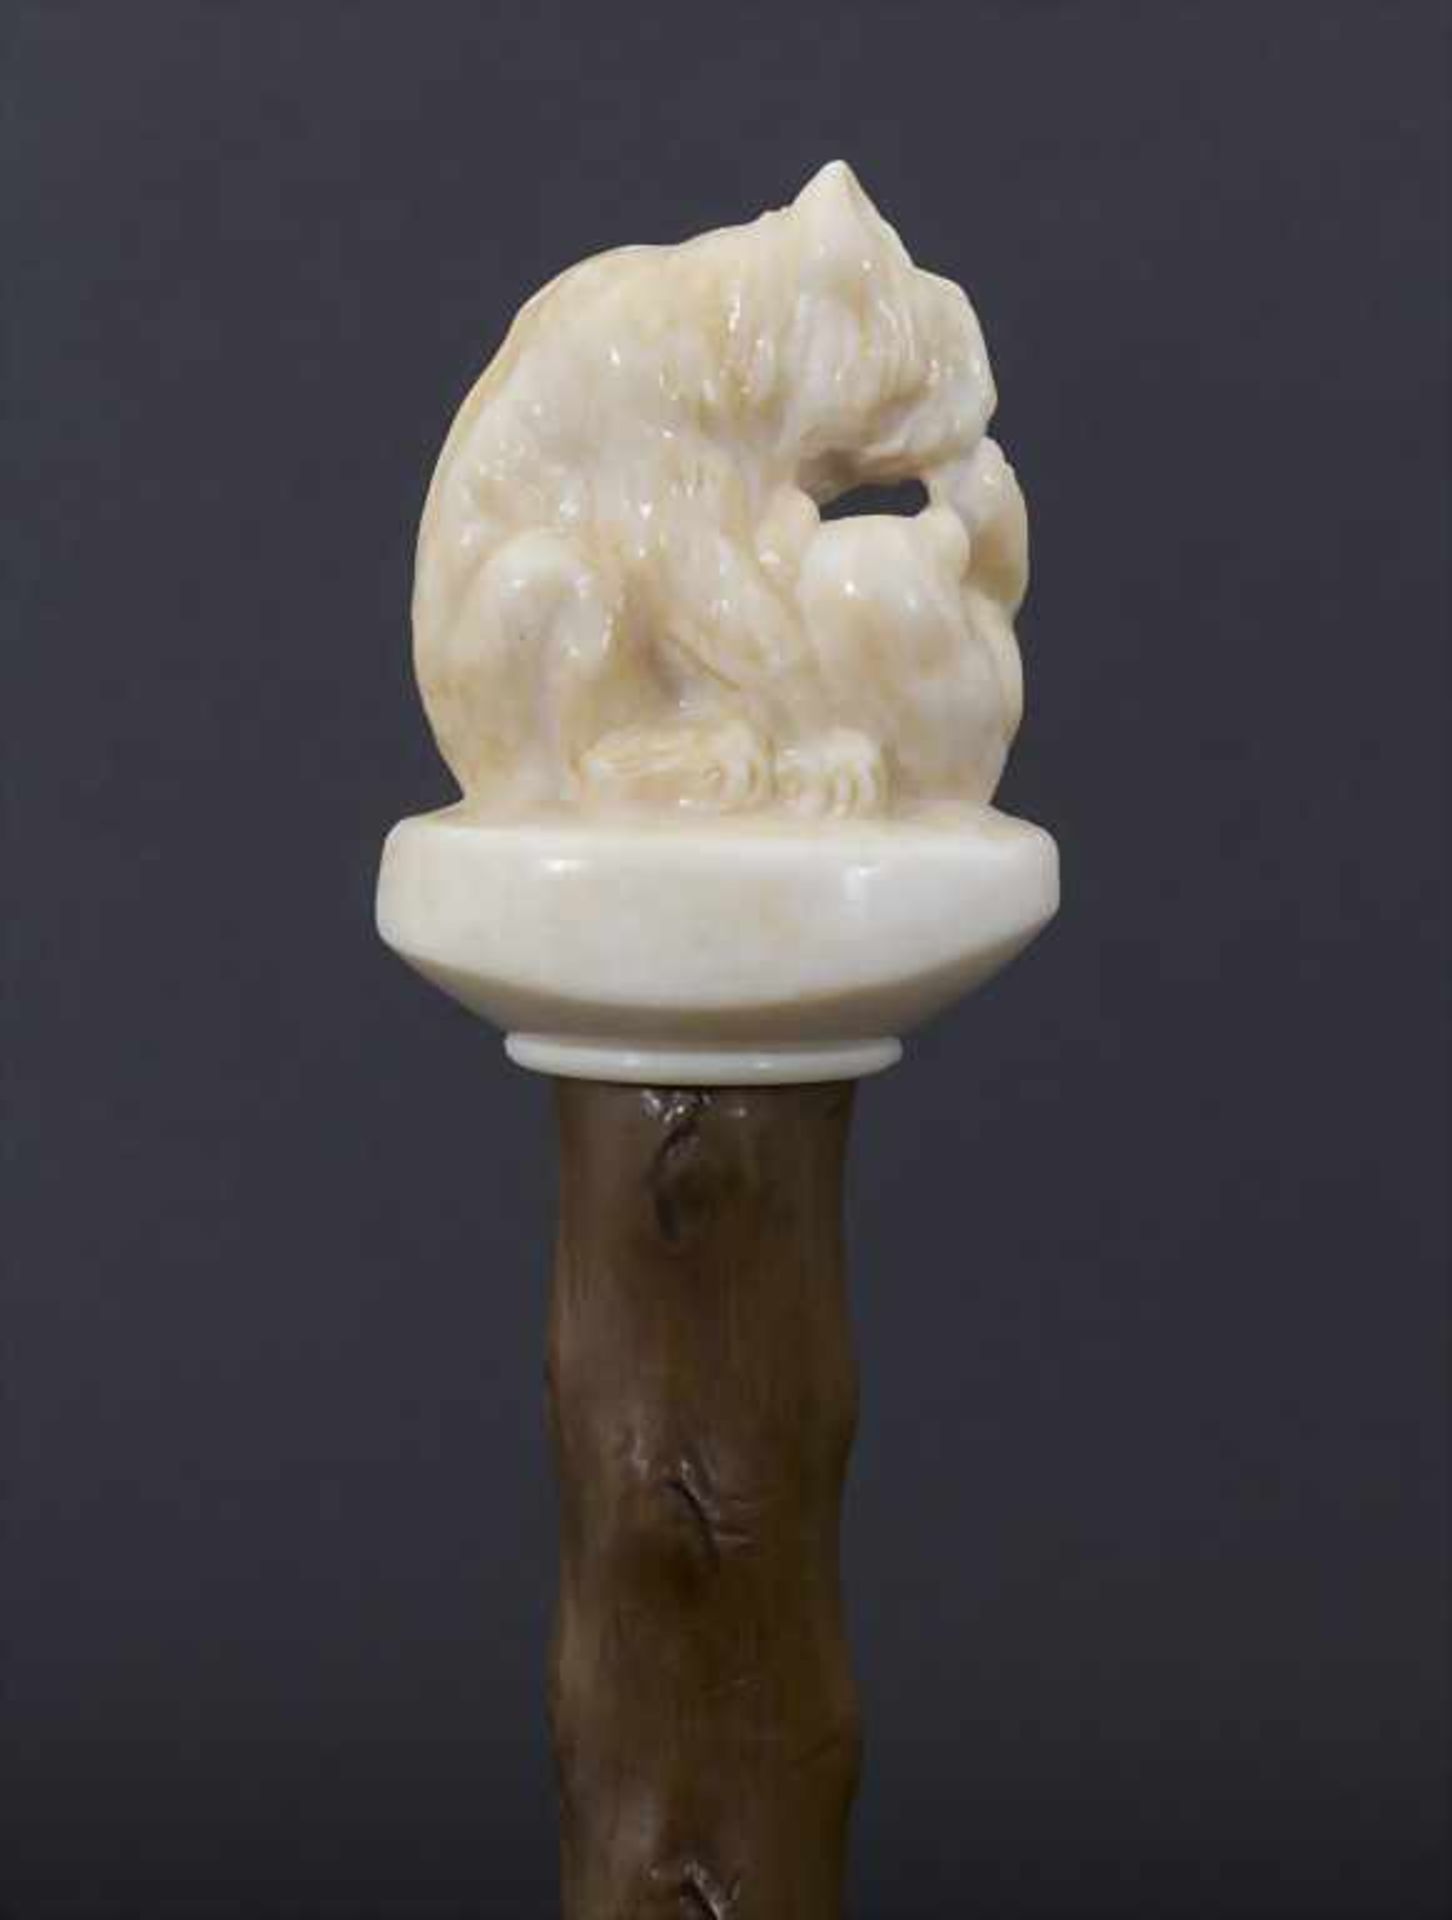 Gehstock mit Elfenbeingriff 'Spielende Hunde' / A cane with ivory handle 'playing dogs', um - Bild 3 aus 5